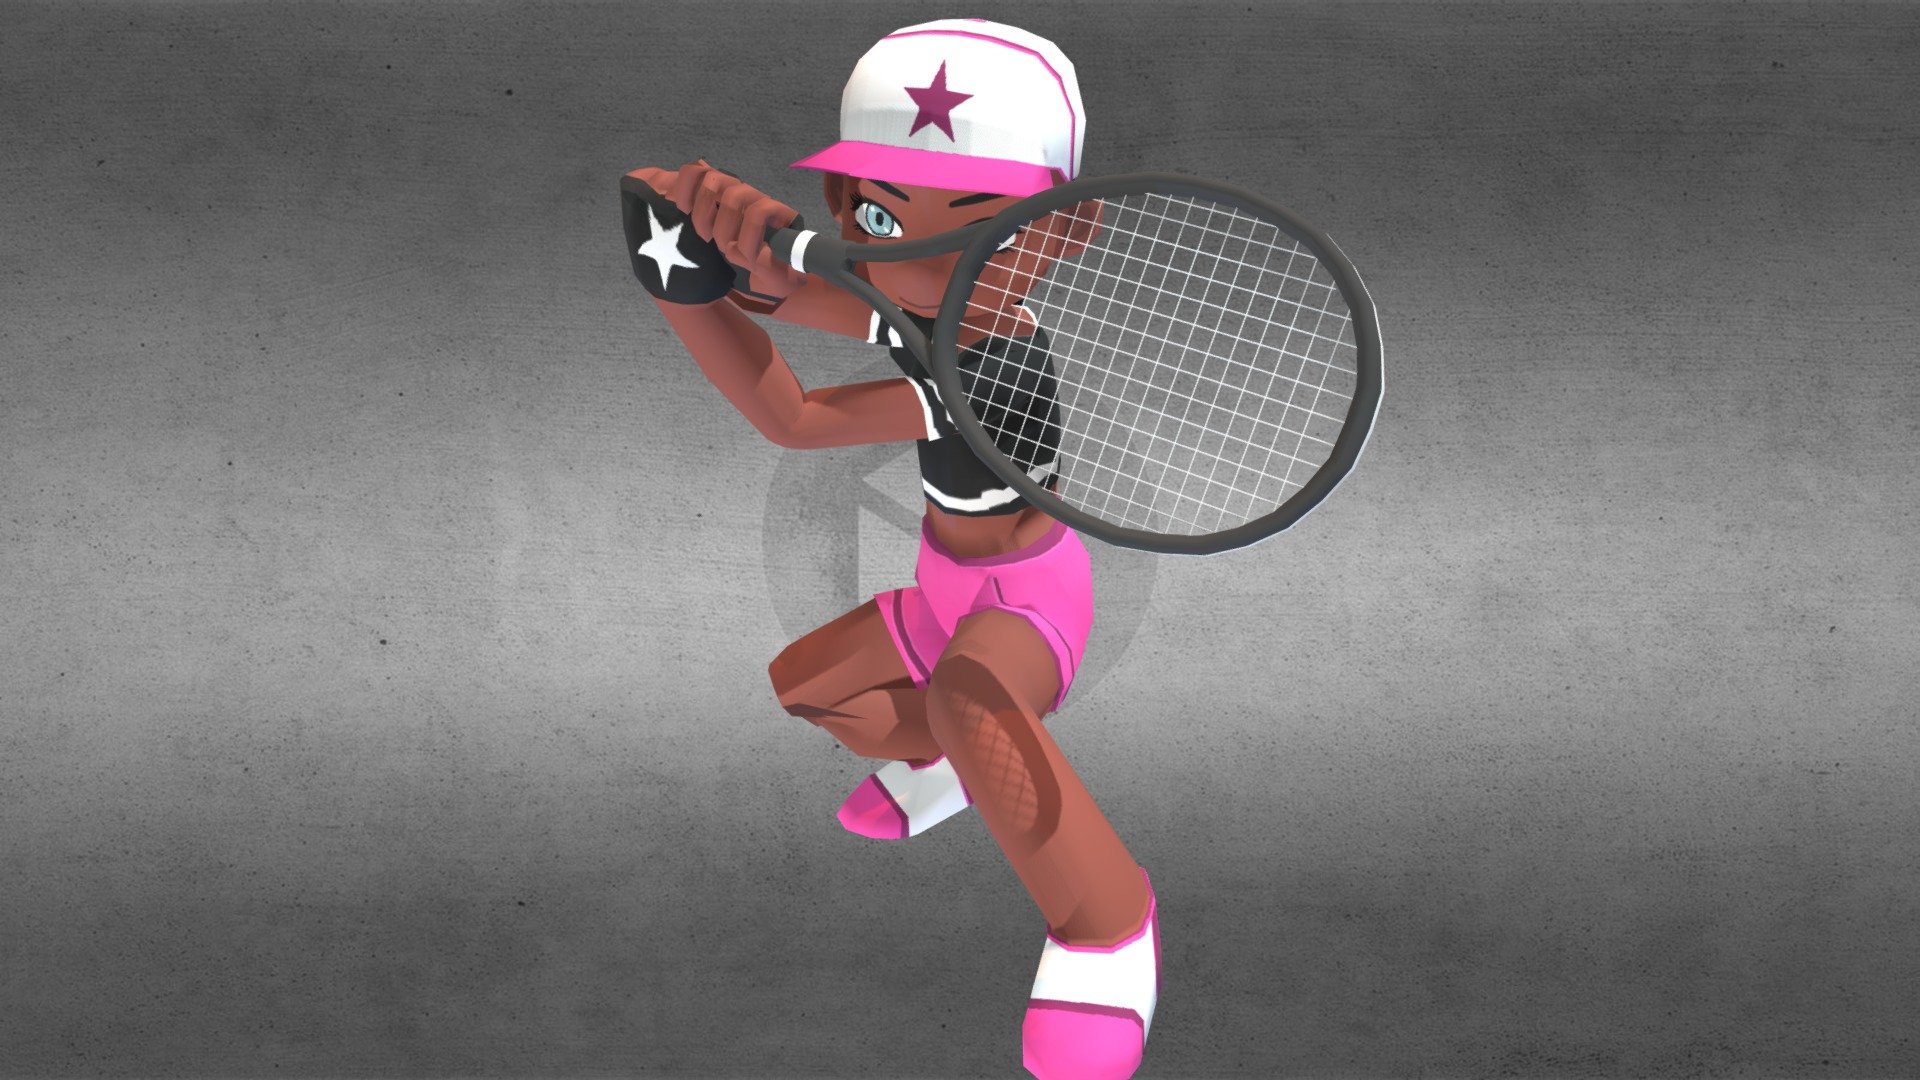 A low poly model with armor made using mixamo. It has no other animation.

Racket credits:
https://sketchfab.com/3d-models/raqueta-de-tenis-d204c0b5d862426fa5c04b262d6b4cad

by #moniquinha - Tennis player (Woman) - 3D model by Stigia Studio (@stigiastudio) 3d model